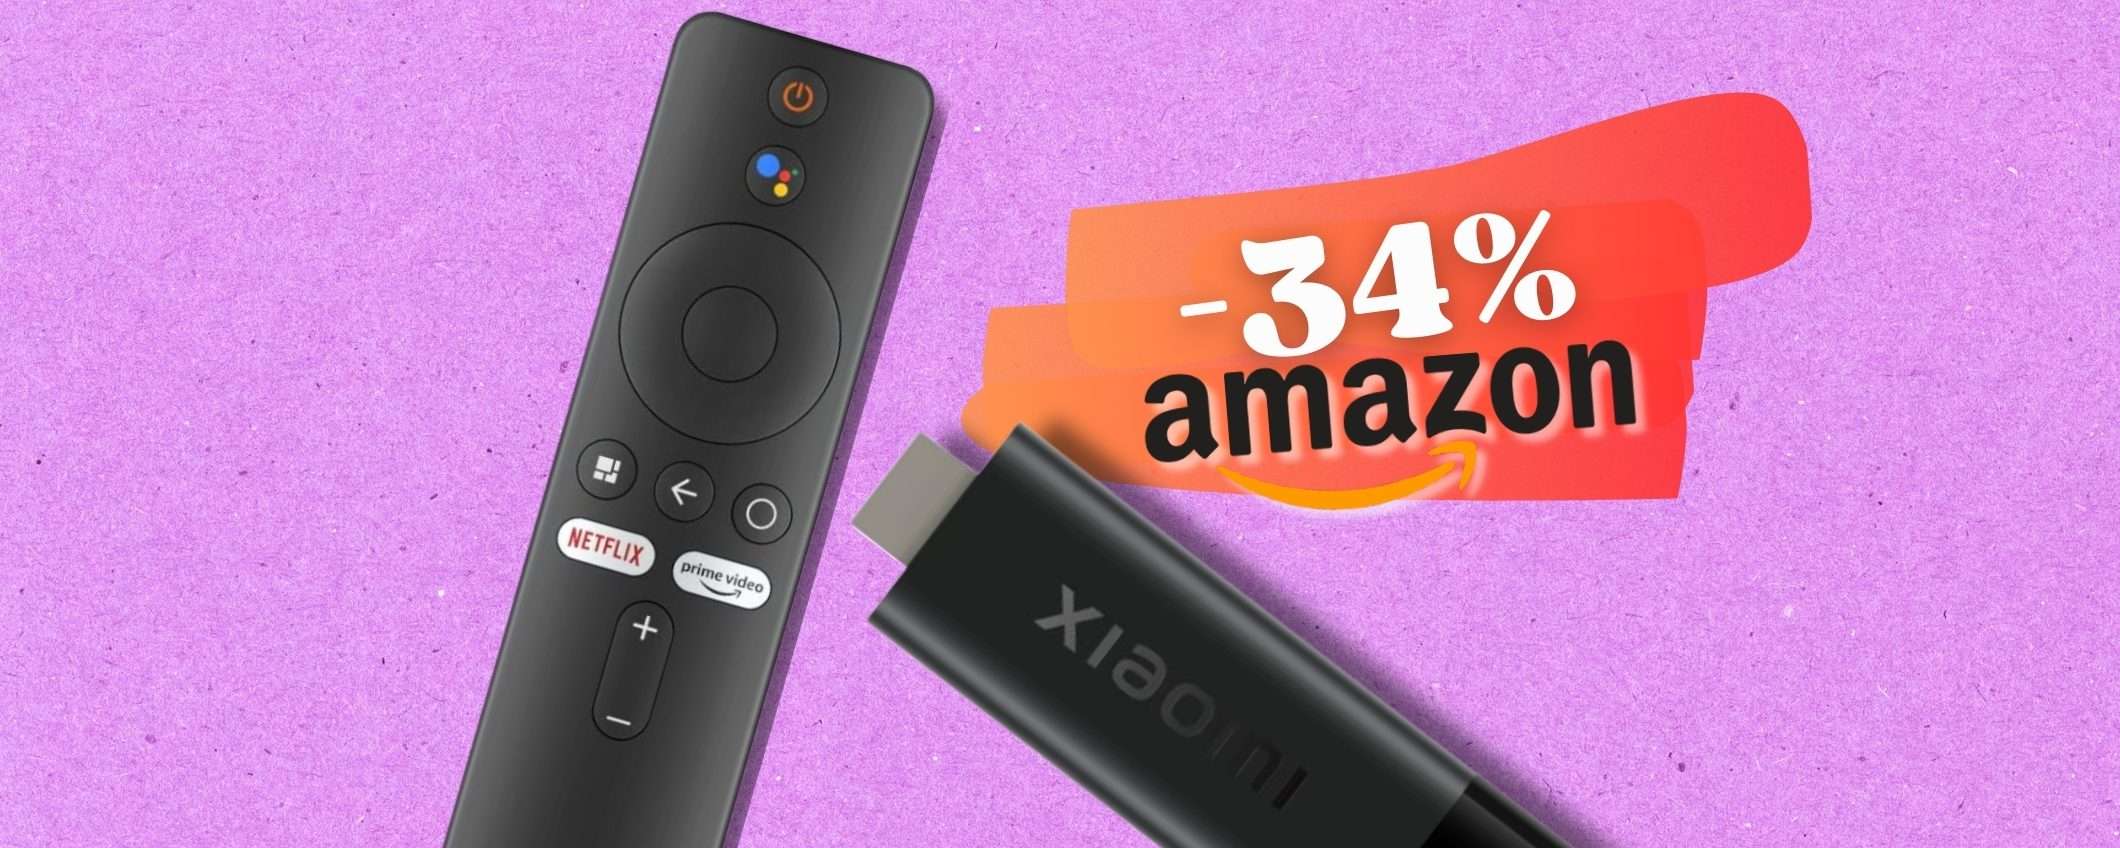 XIAOMI sfida la Fire TV Stick con la sua 4K e assistente Google (-34%)